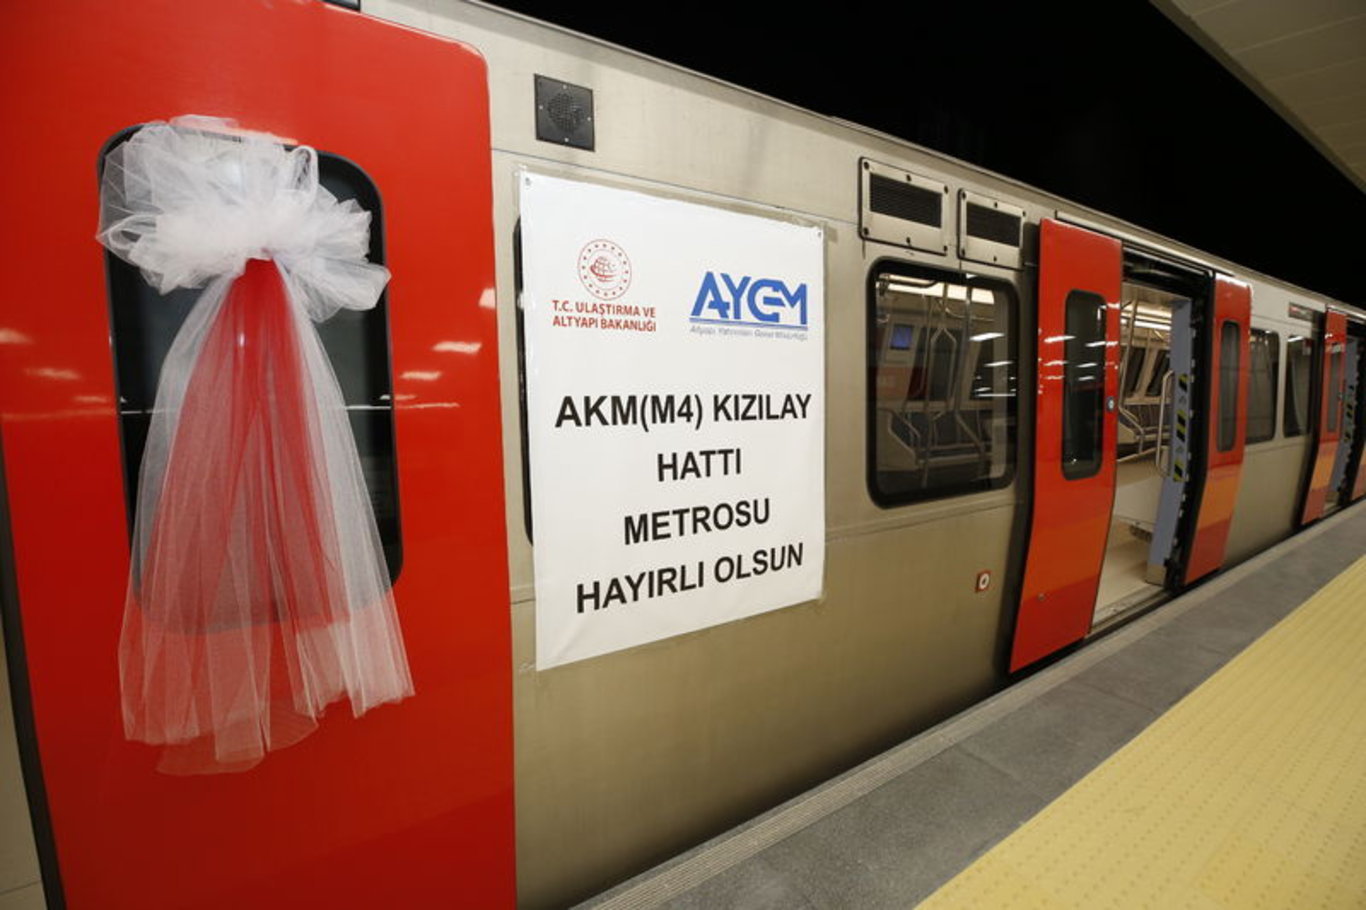 Ankara'nın yeni metro hattı hizmete açıldı! AKM-Gar-Kızılay Metro Hattı'nda kaç durak var, durak isimleri neler ve hangi güzergahlardan geçiyor?